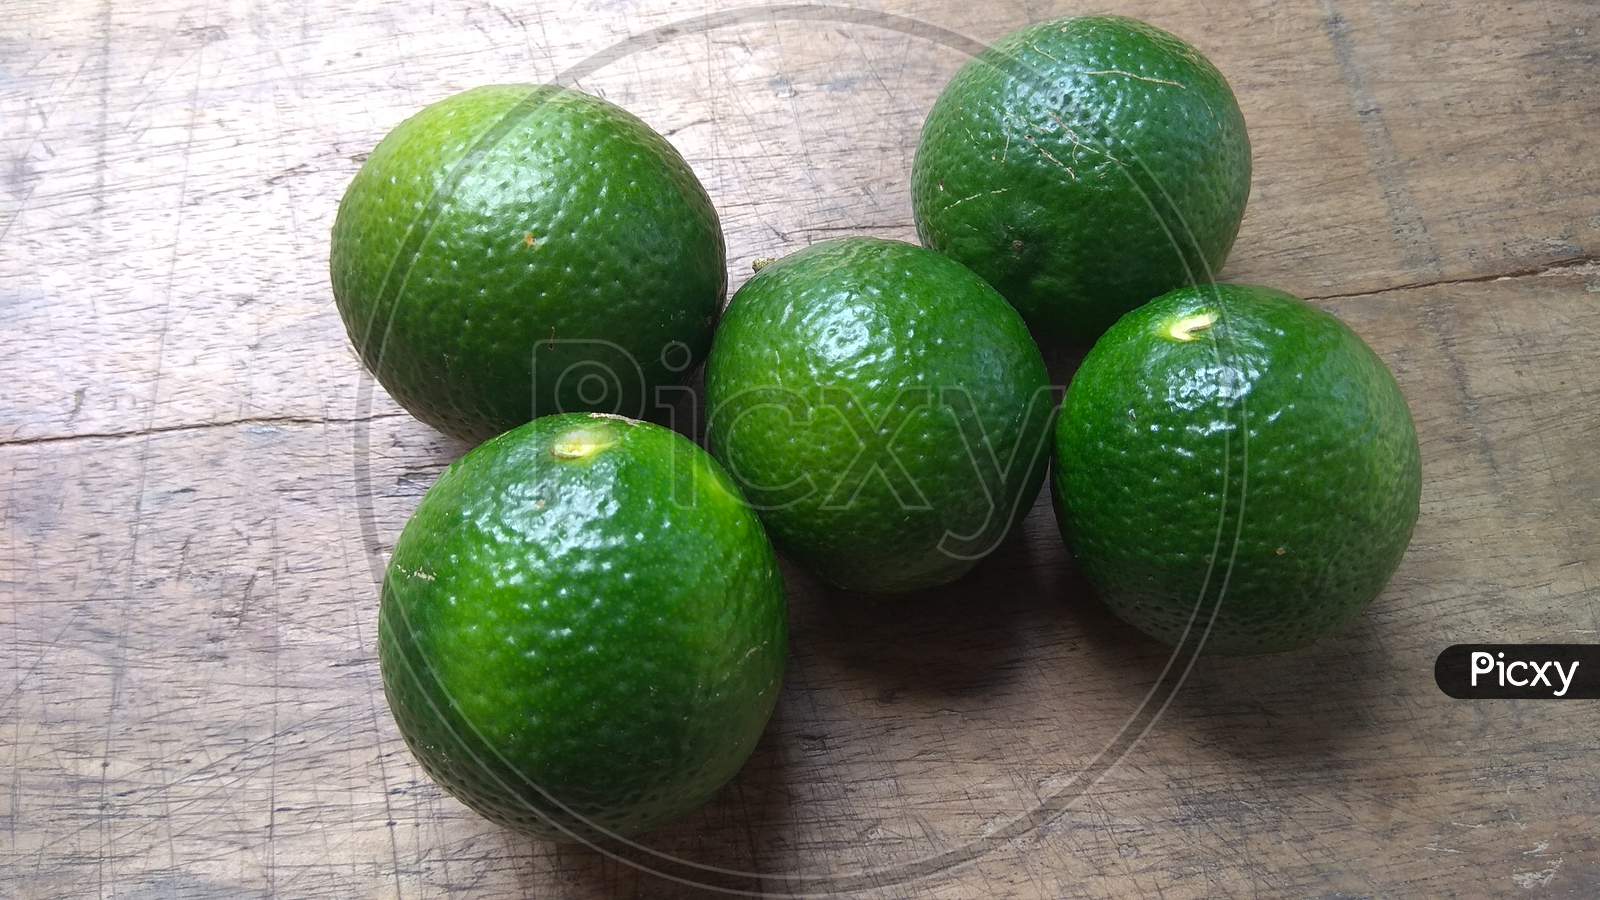 Fresh green lemons on wooden background.